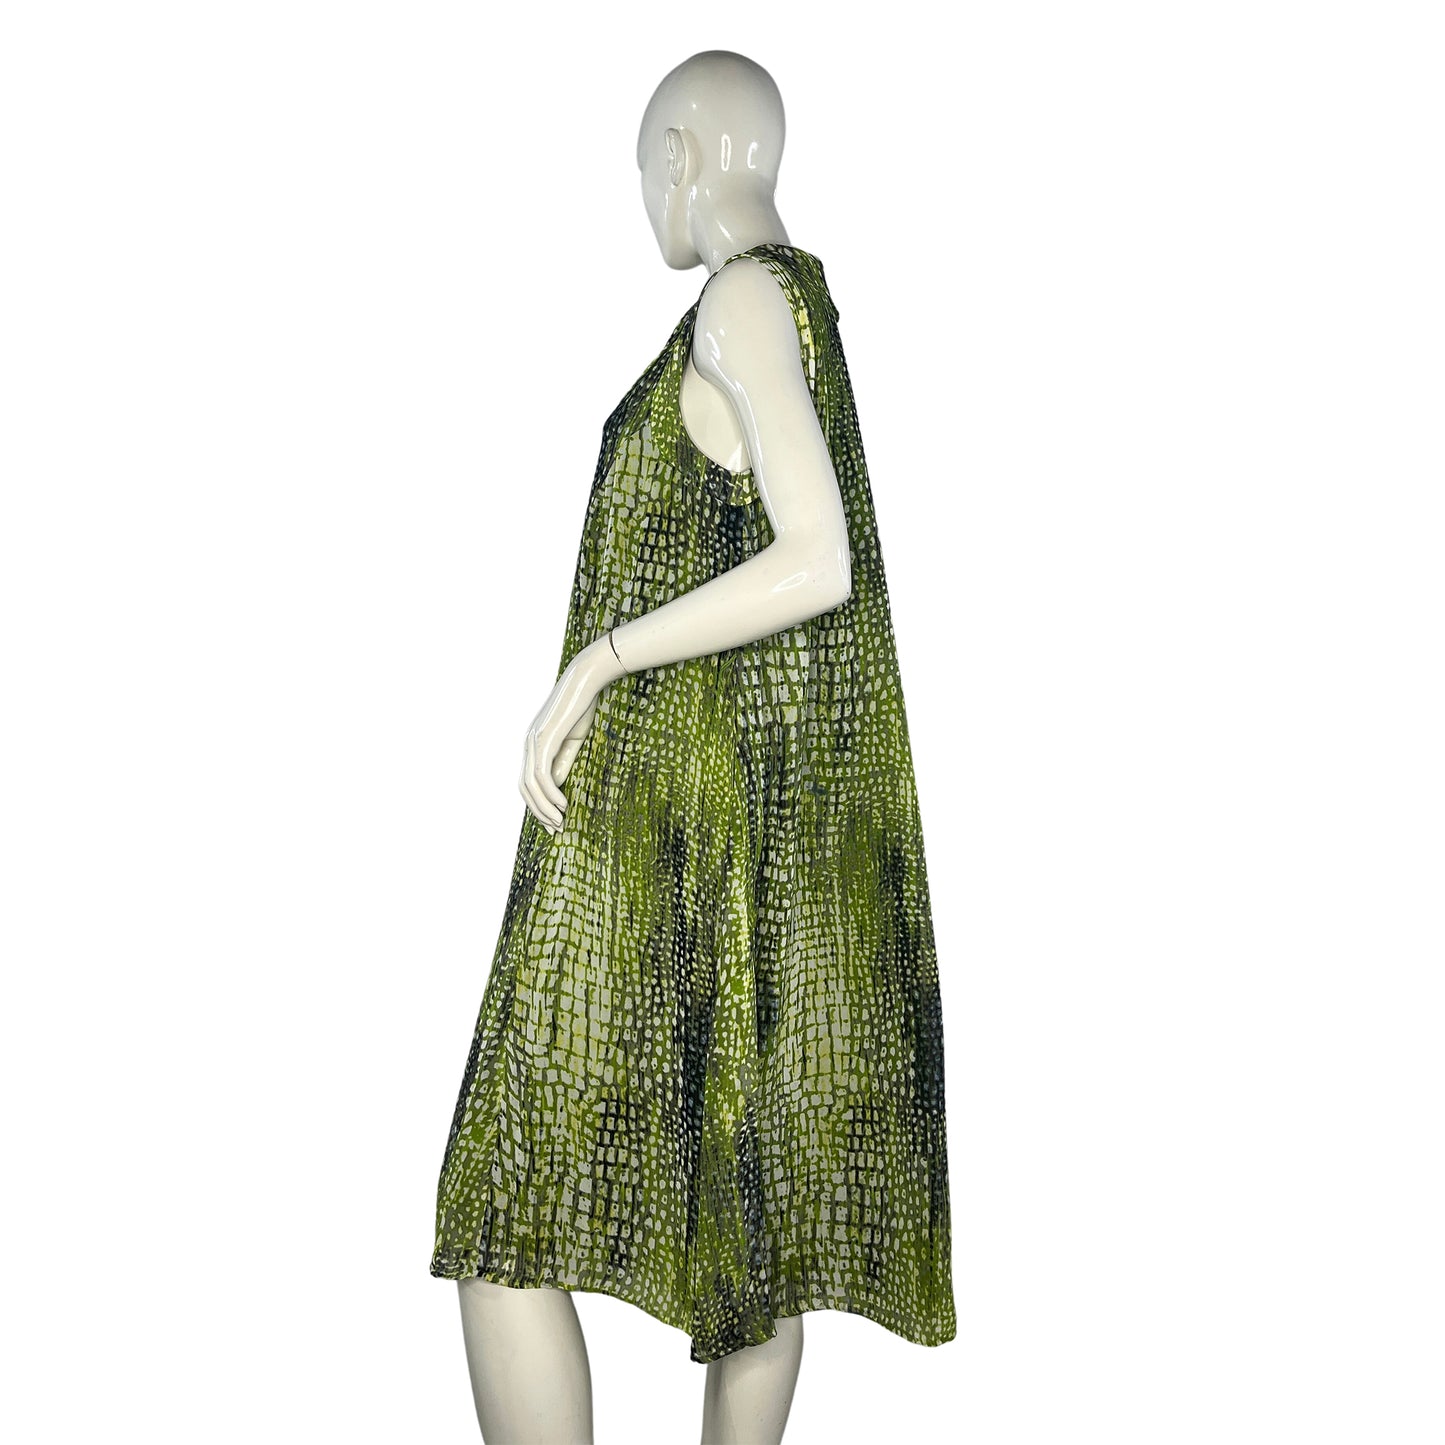 Jones New York Ruffles Sleeveless  Green Dress Sz 14W SKU 000418